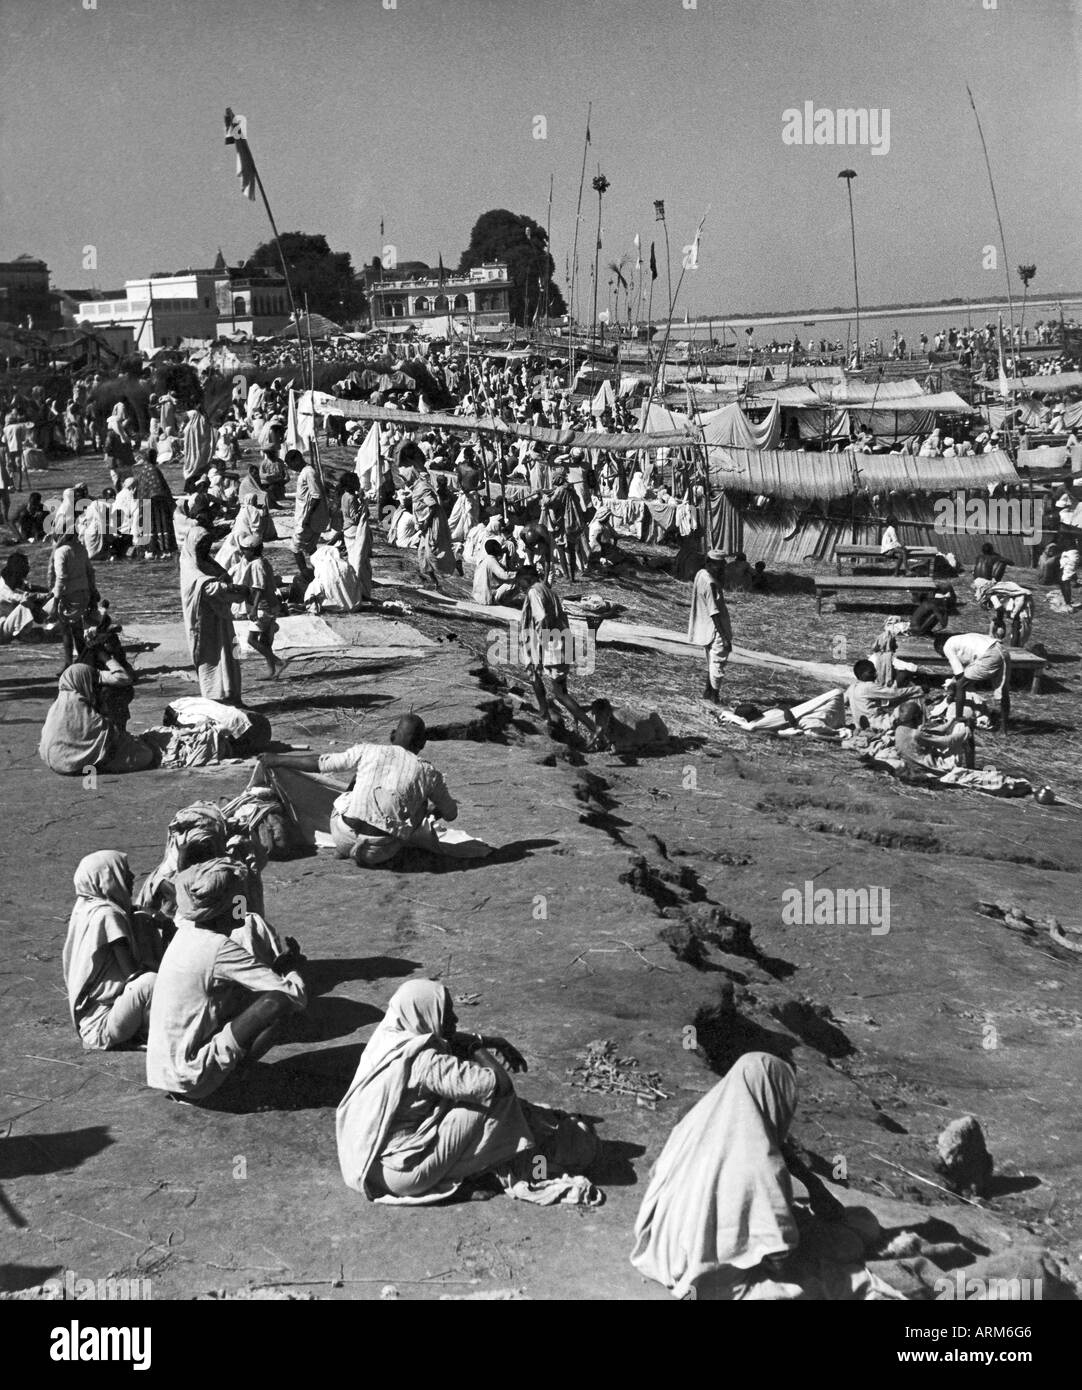 Alte Jahrgang 1940er Foto von indischen Menschen sitzen in Sommerhitze mit Kopf bedeckt, Banaras, Varanasi, Uttar Pradesh, Indien Stockfoto